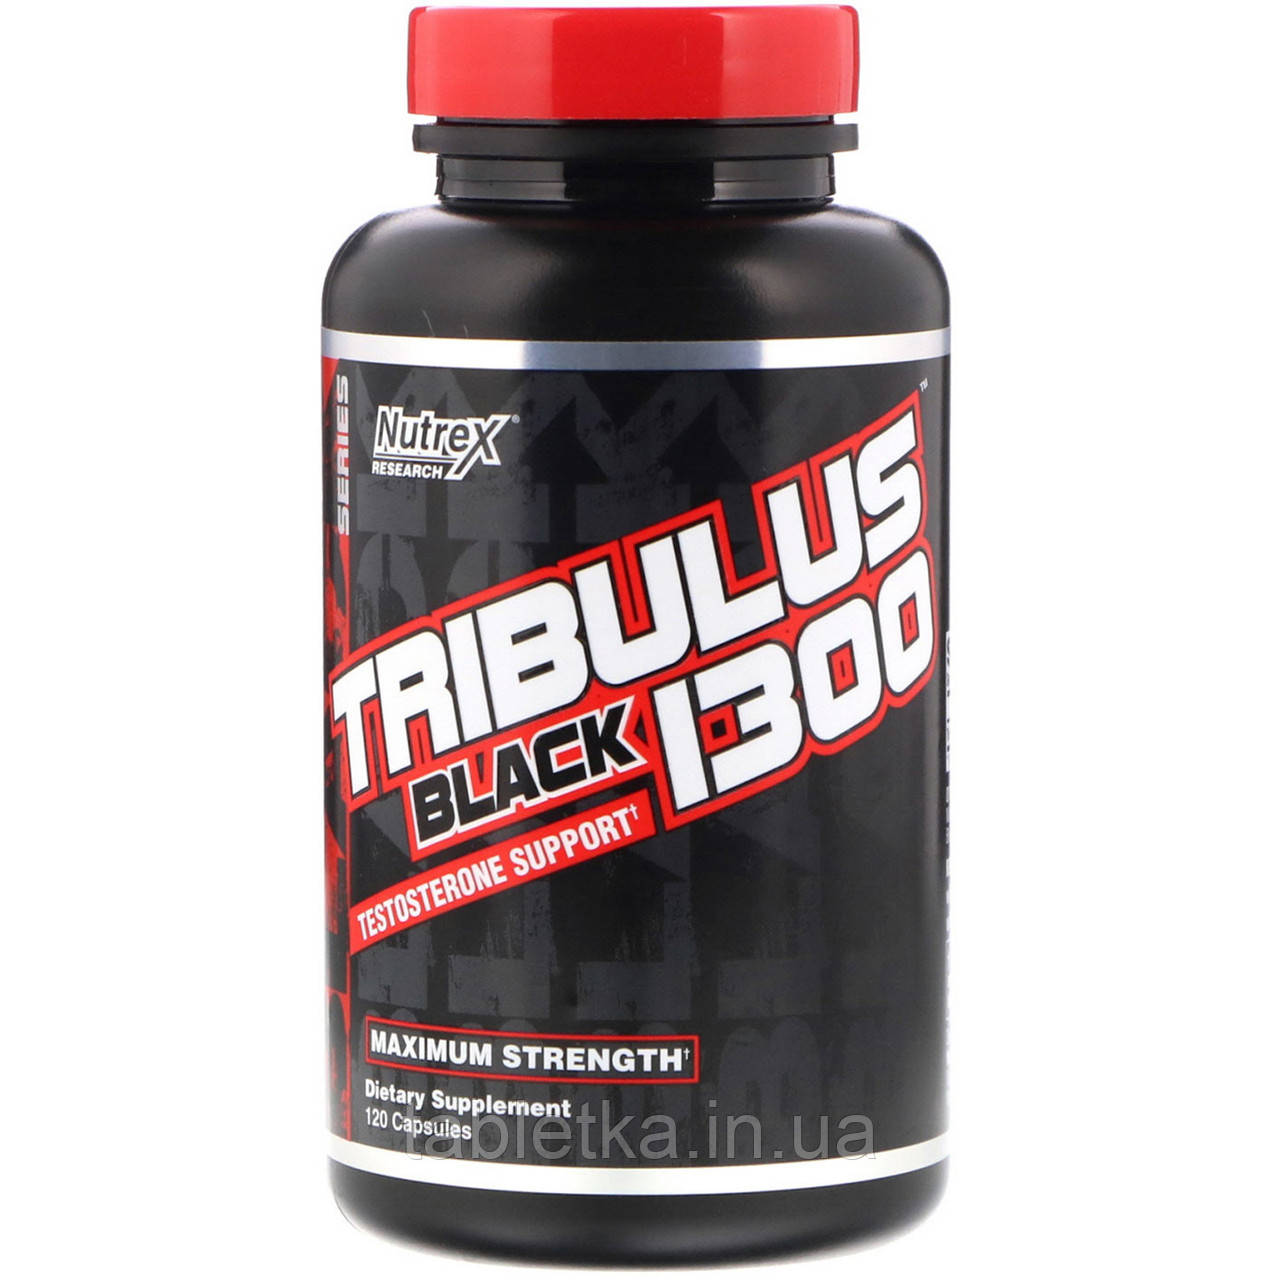 Nutrex Research, Tribulus Black 1300, підтримка рівня тестостерону, 120 капсул Дніпр